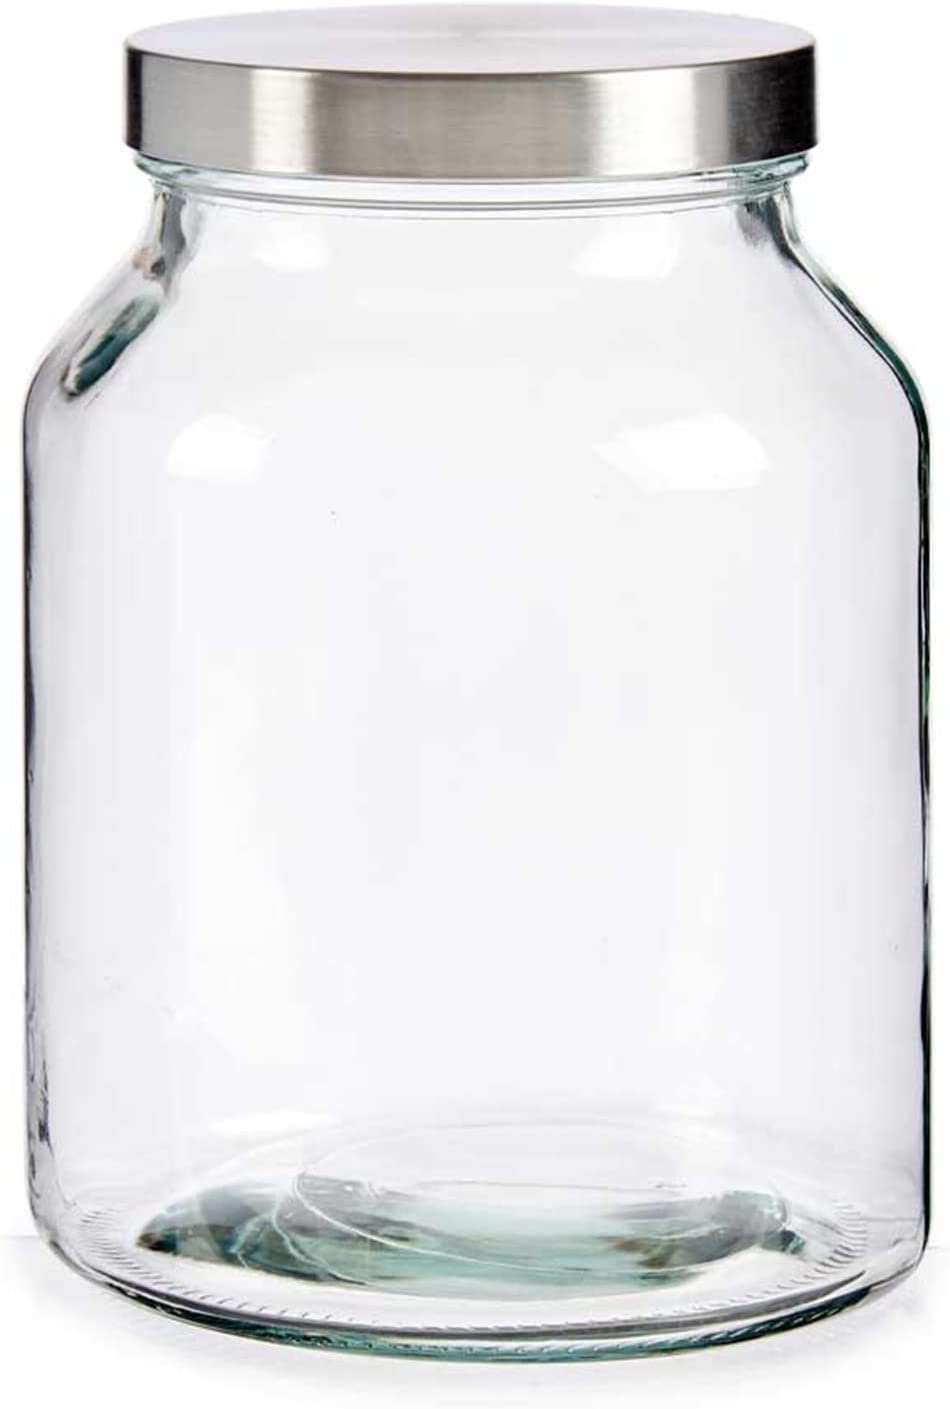 TIENDA EURASIA - Bote Cristal con Tapa de Aluminio a Rosca, 3L, 16x16x21 cm